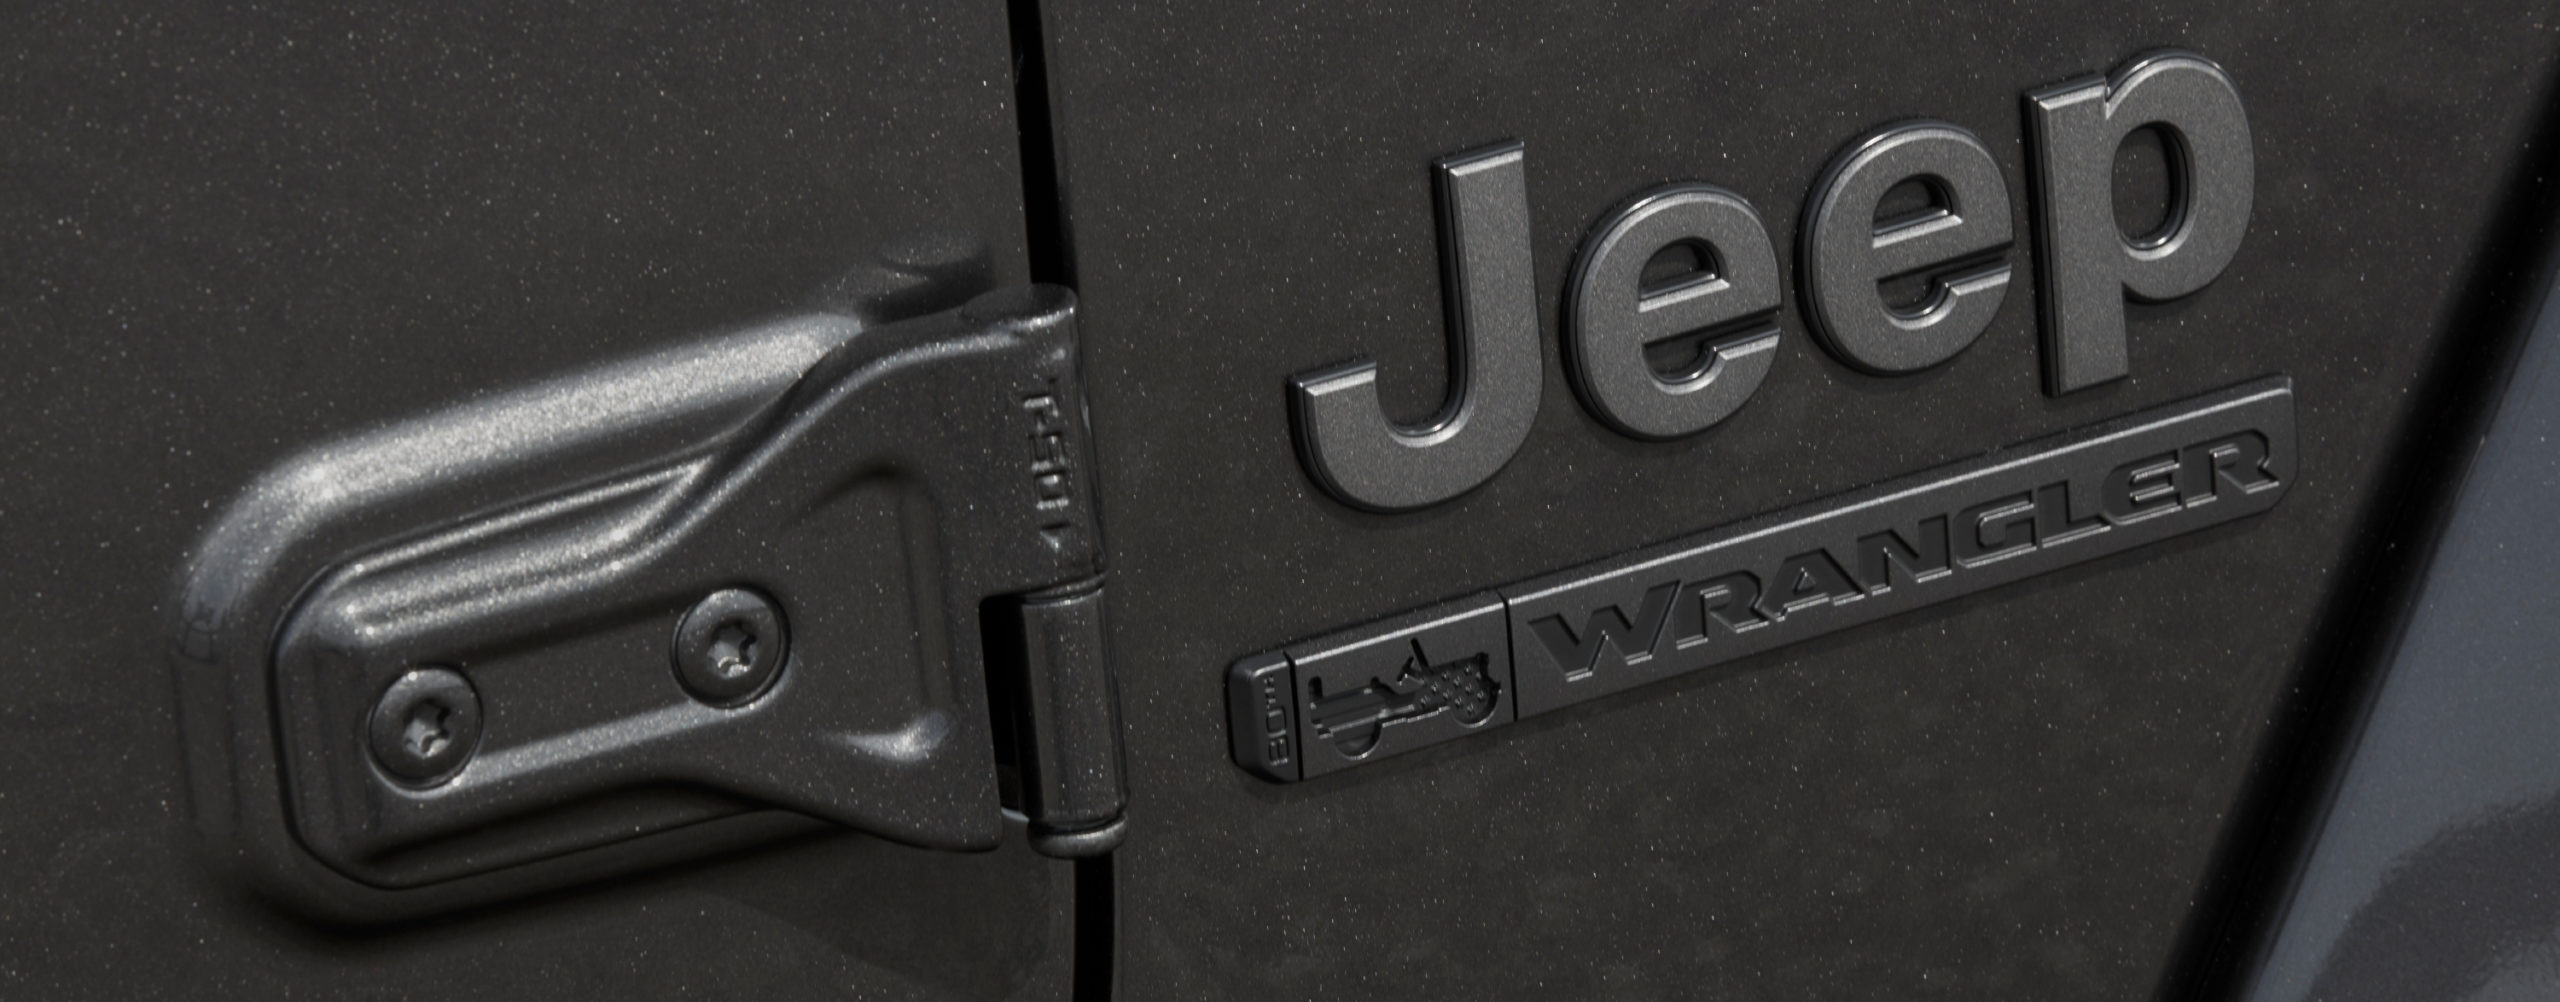 Jeep celebra su 80 Aniversario con Ediciones Especiales